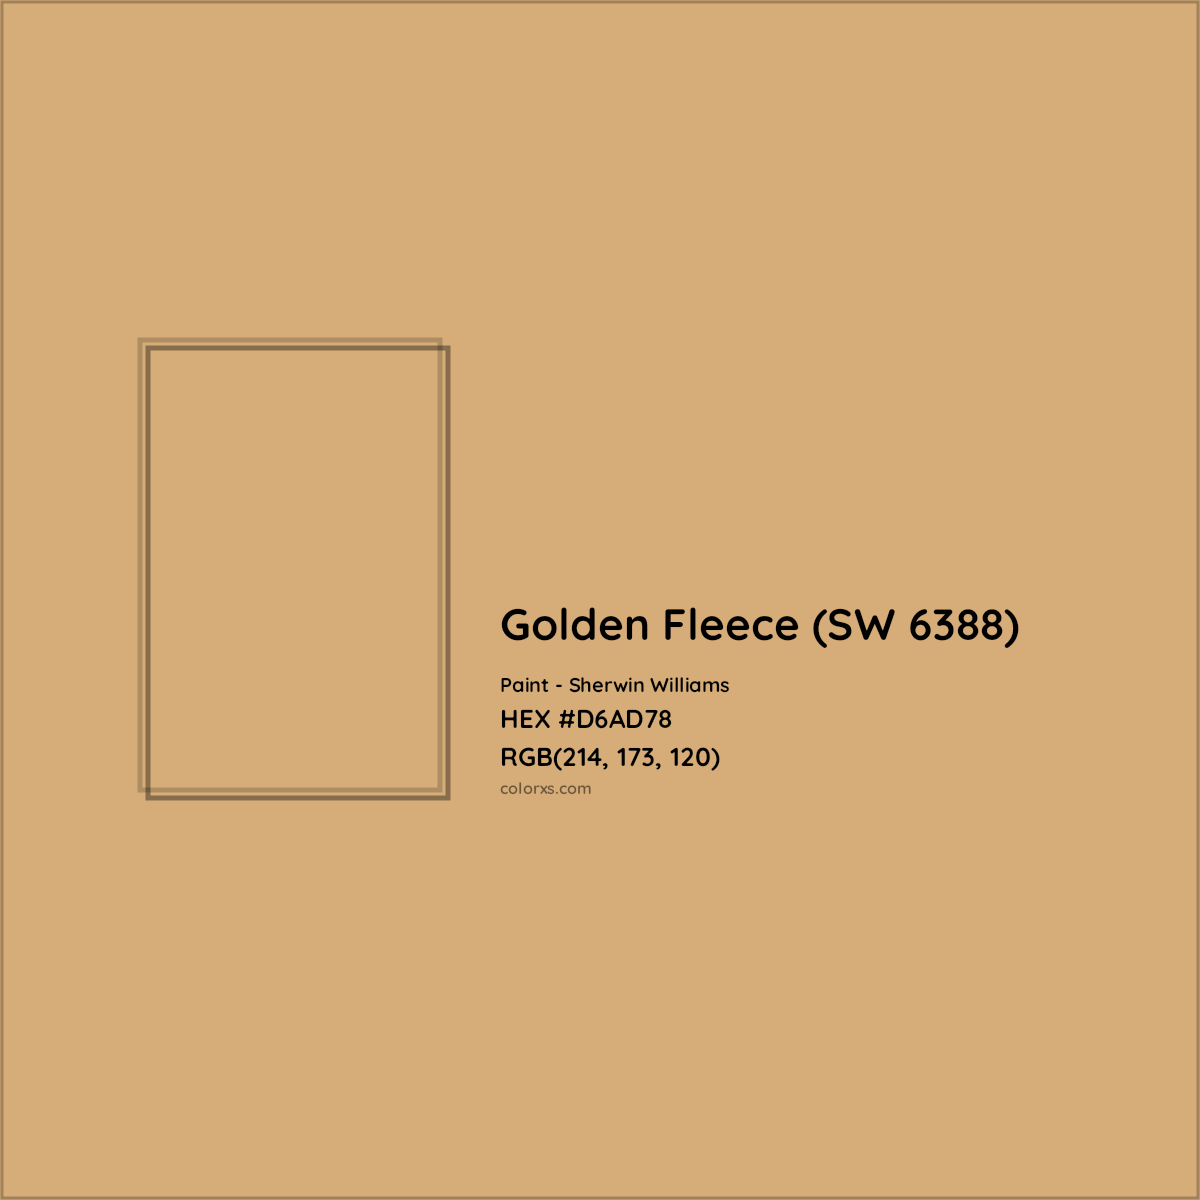 HEX #D6AD78 Golden Fleece (SW 6388) Paint Sherwin Williams - Color Code